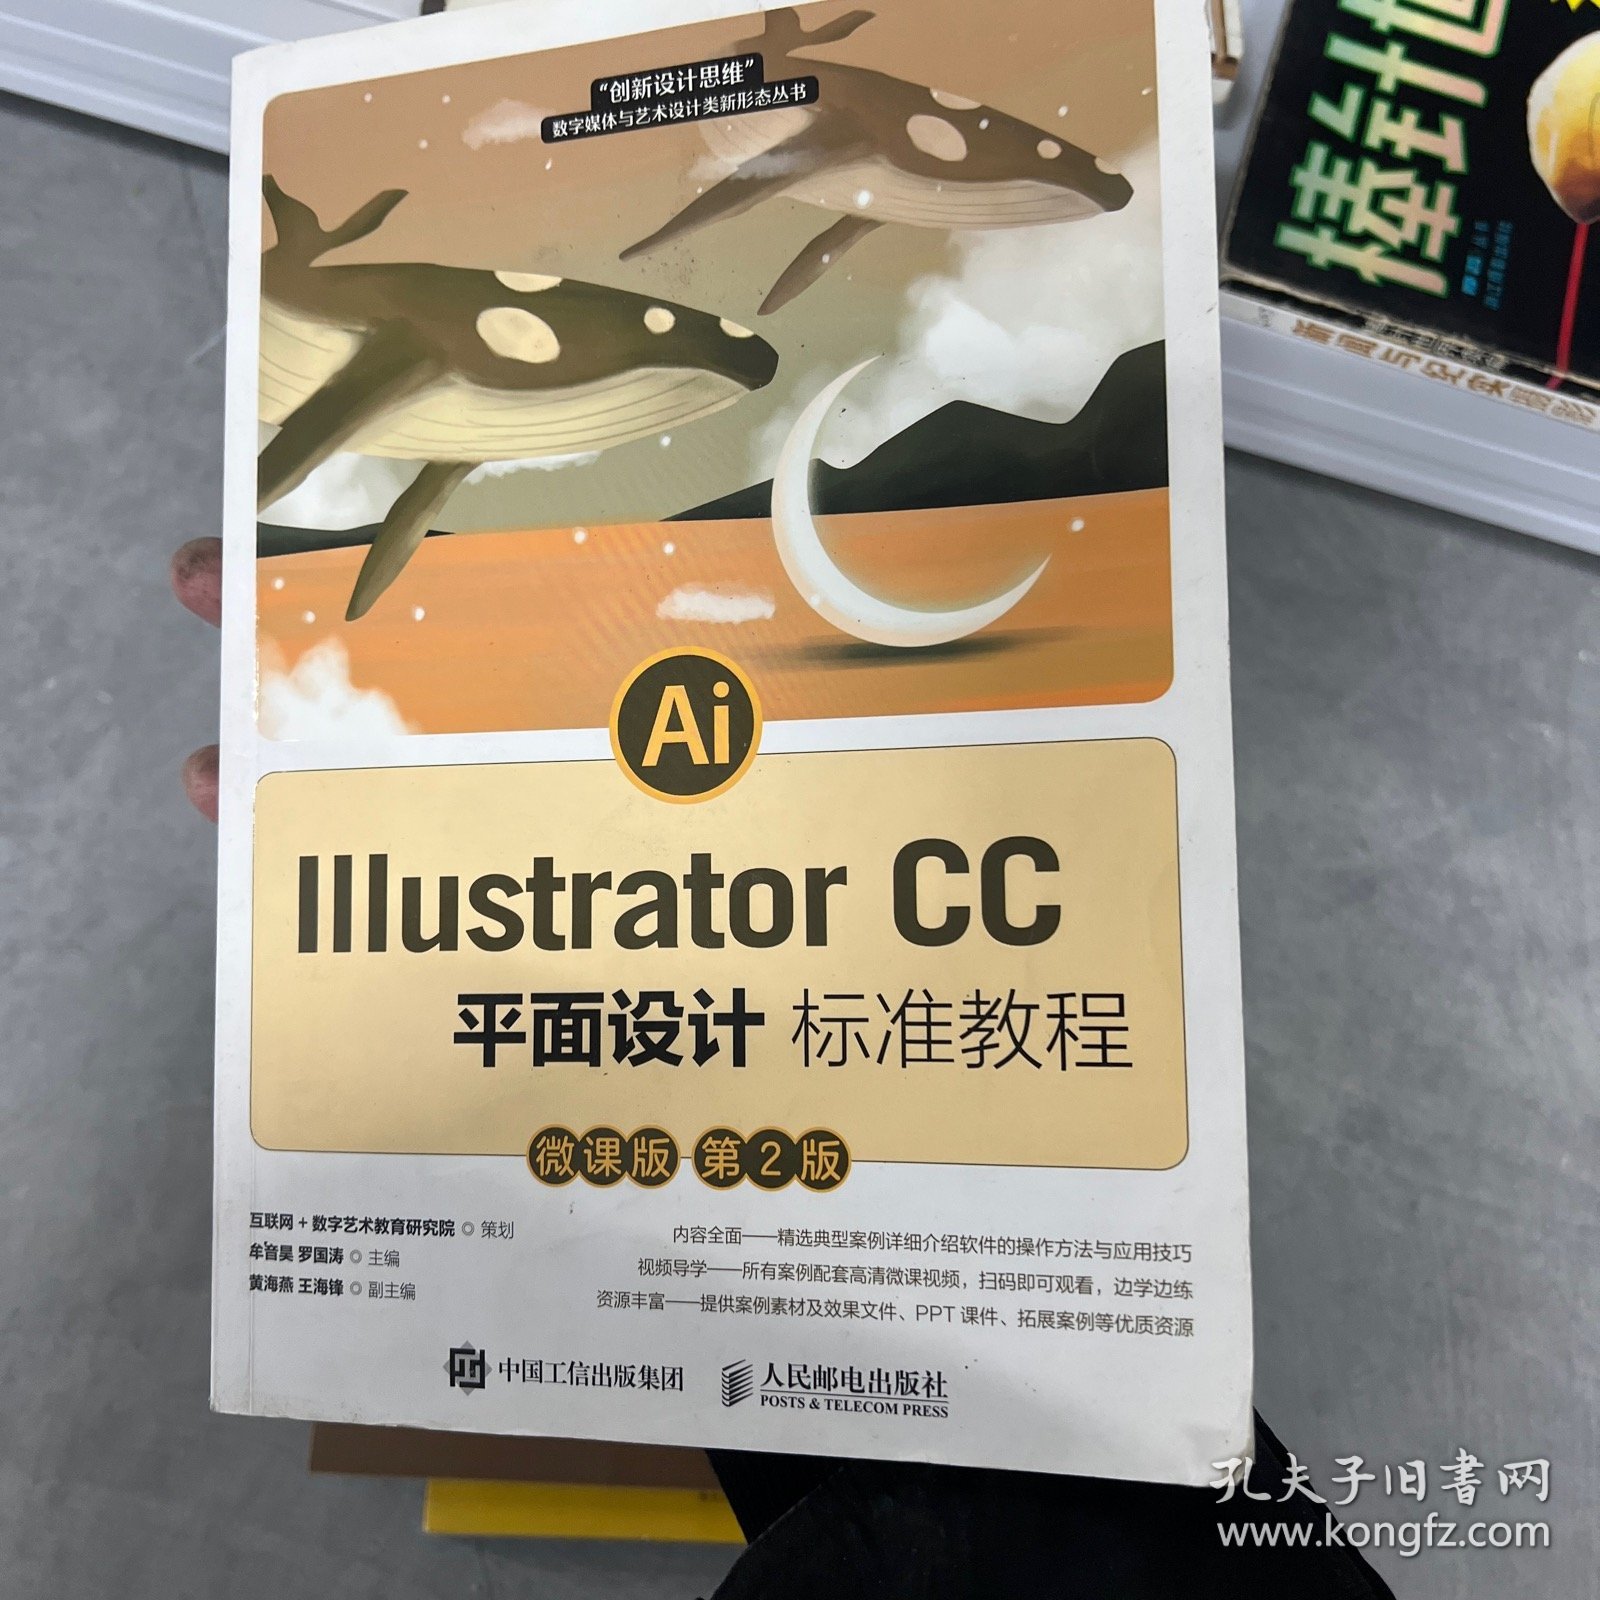 IllustratorCC平面设计标准教程（微课版第2版）